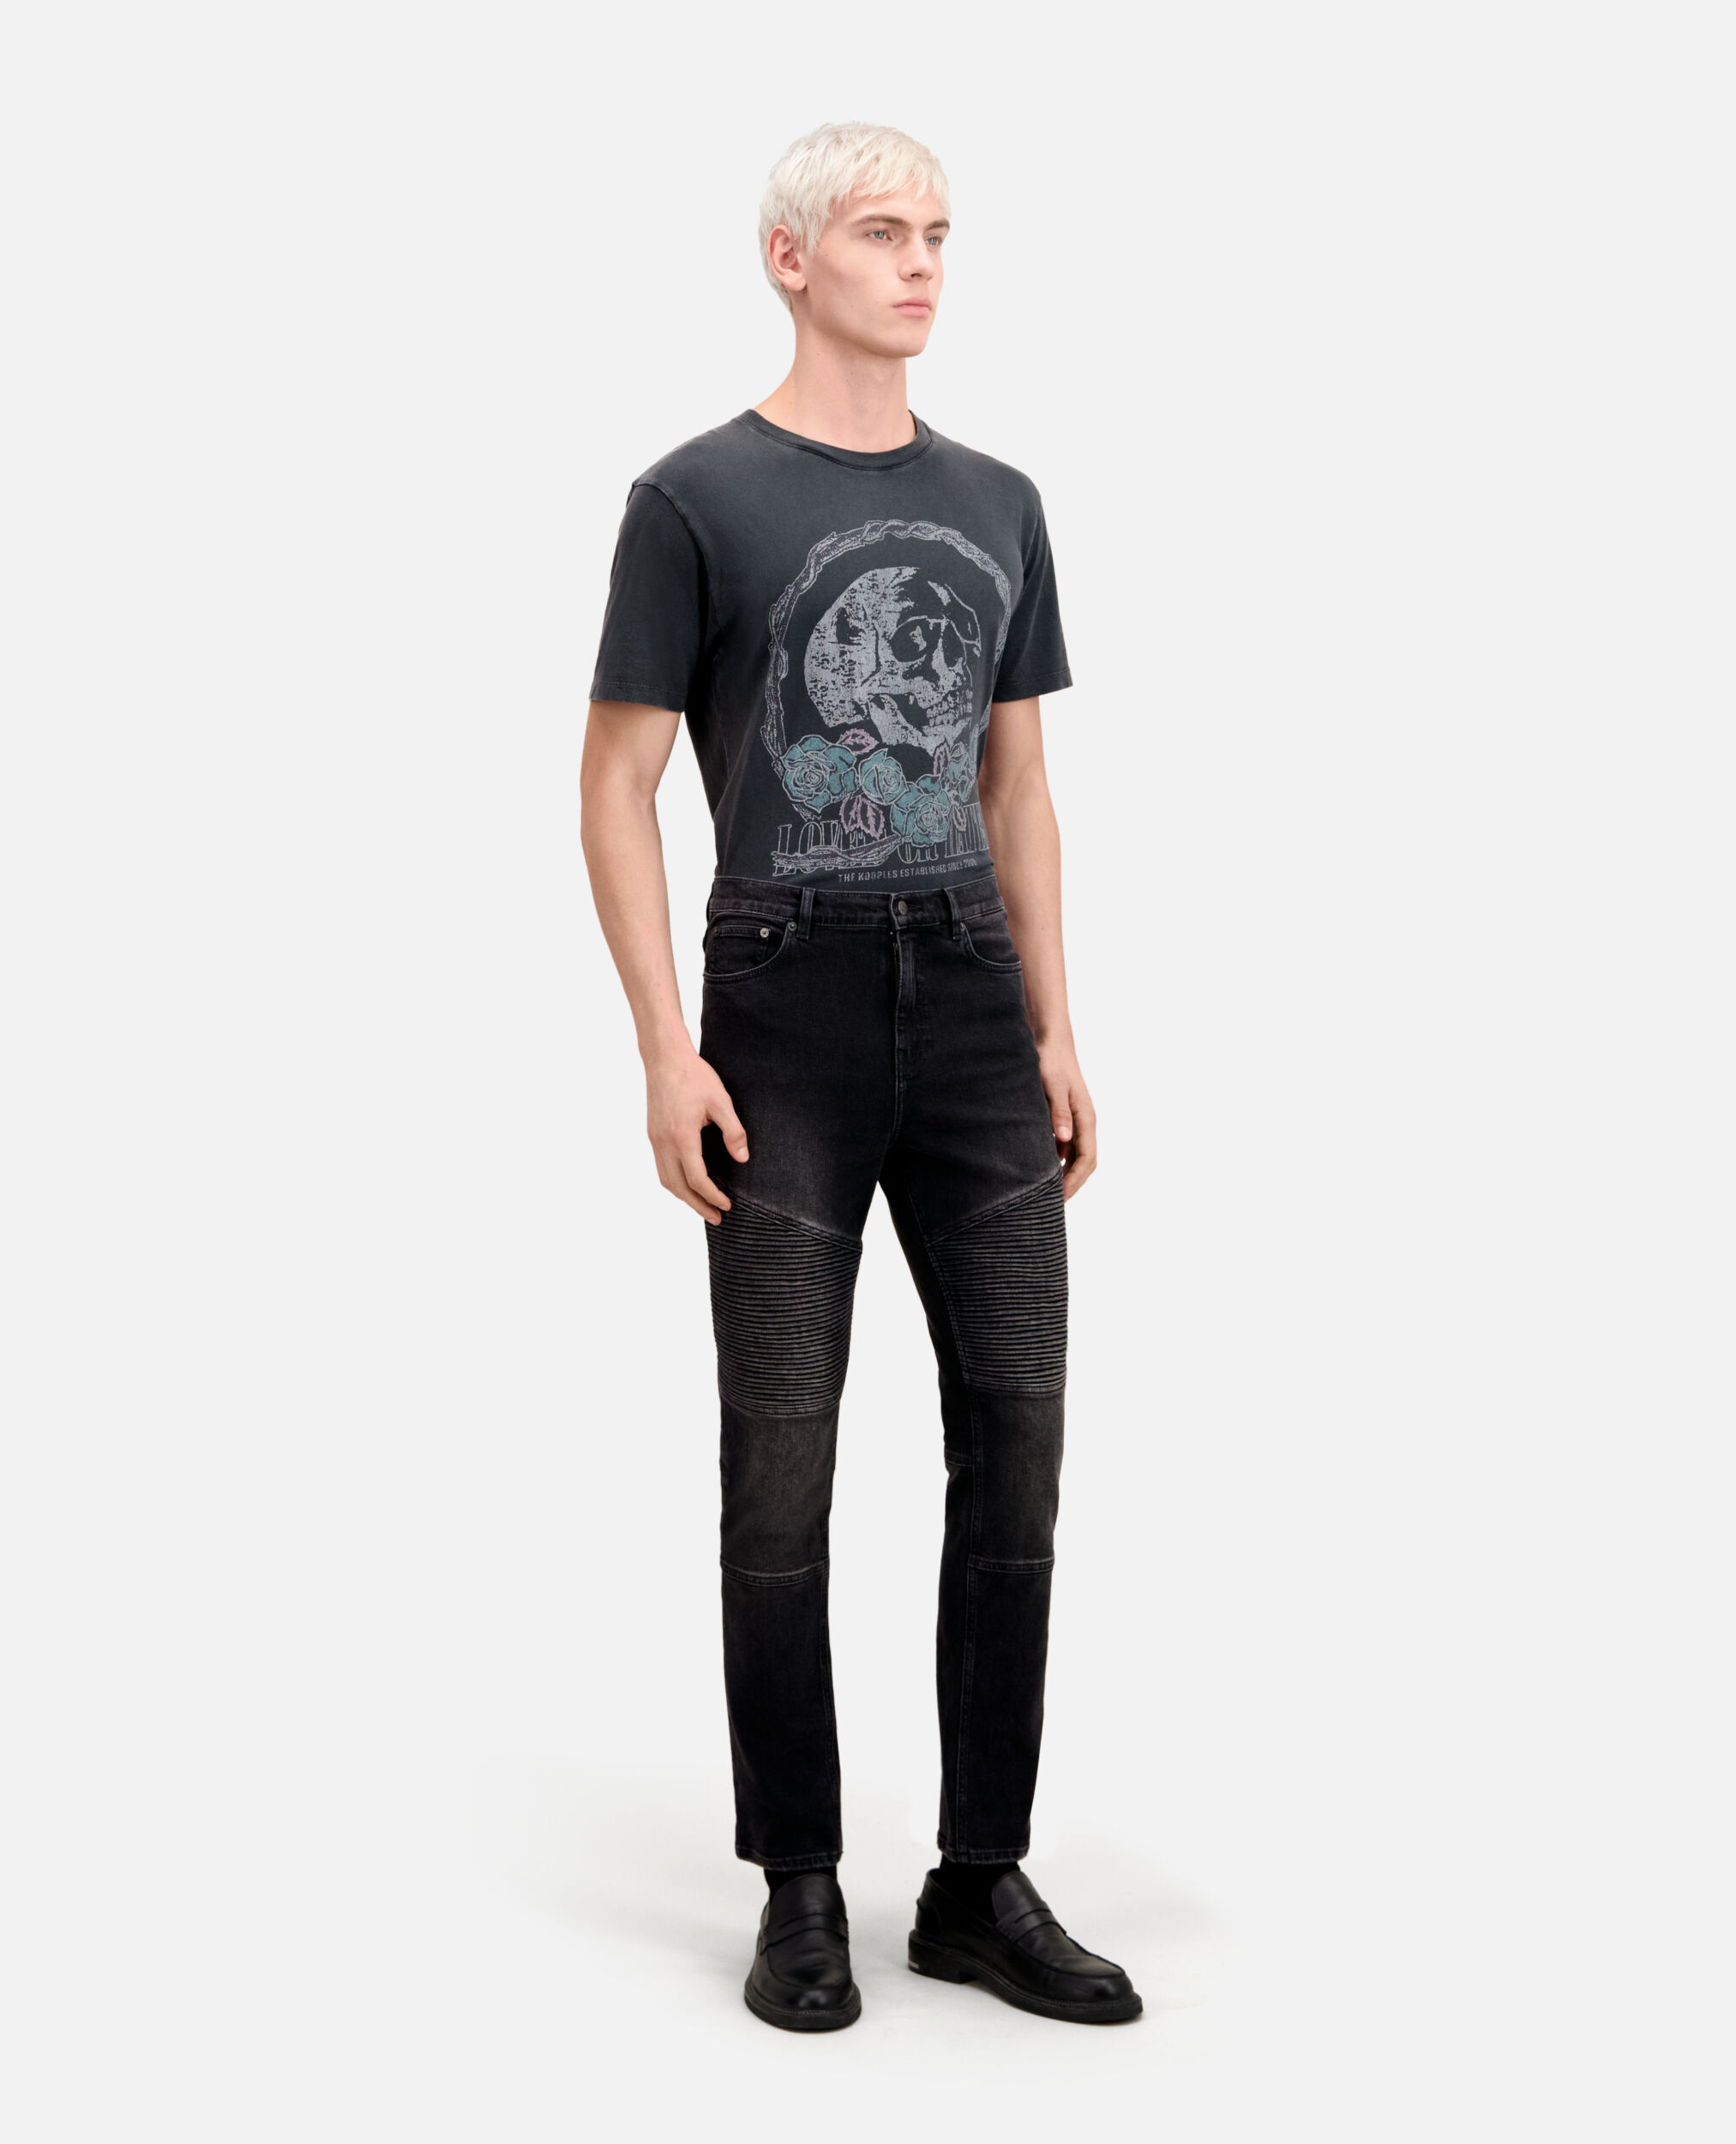 Black slim biker jeans, BLACK WASHED, hi-res image number null